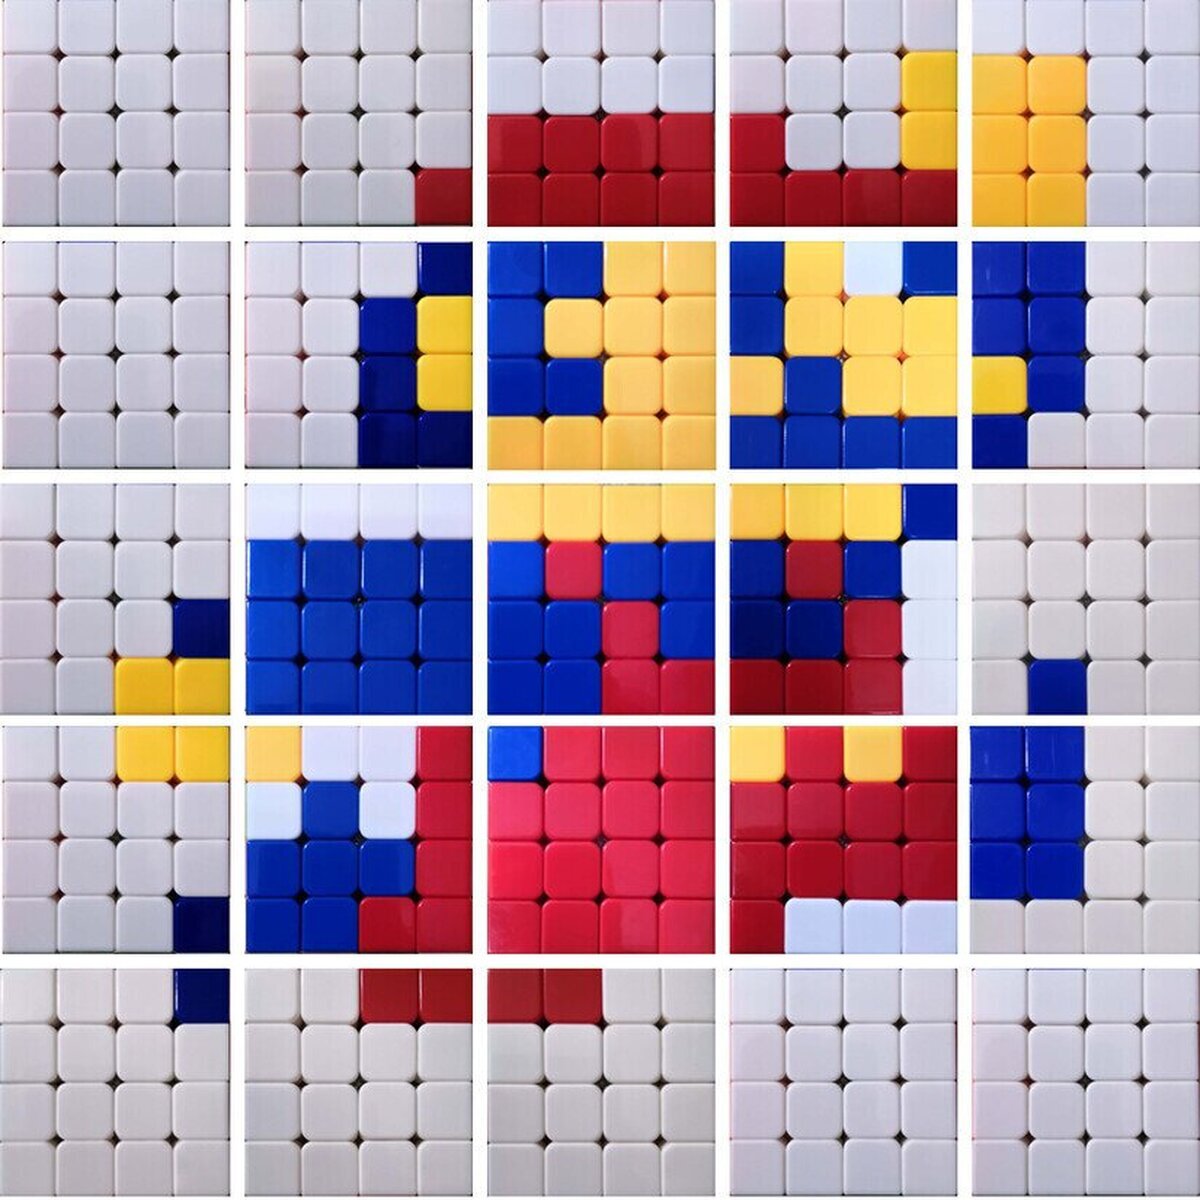 Un Mario retro creado con cubos de Rubik. Por Raghav_Verma